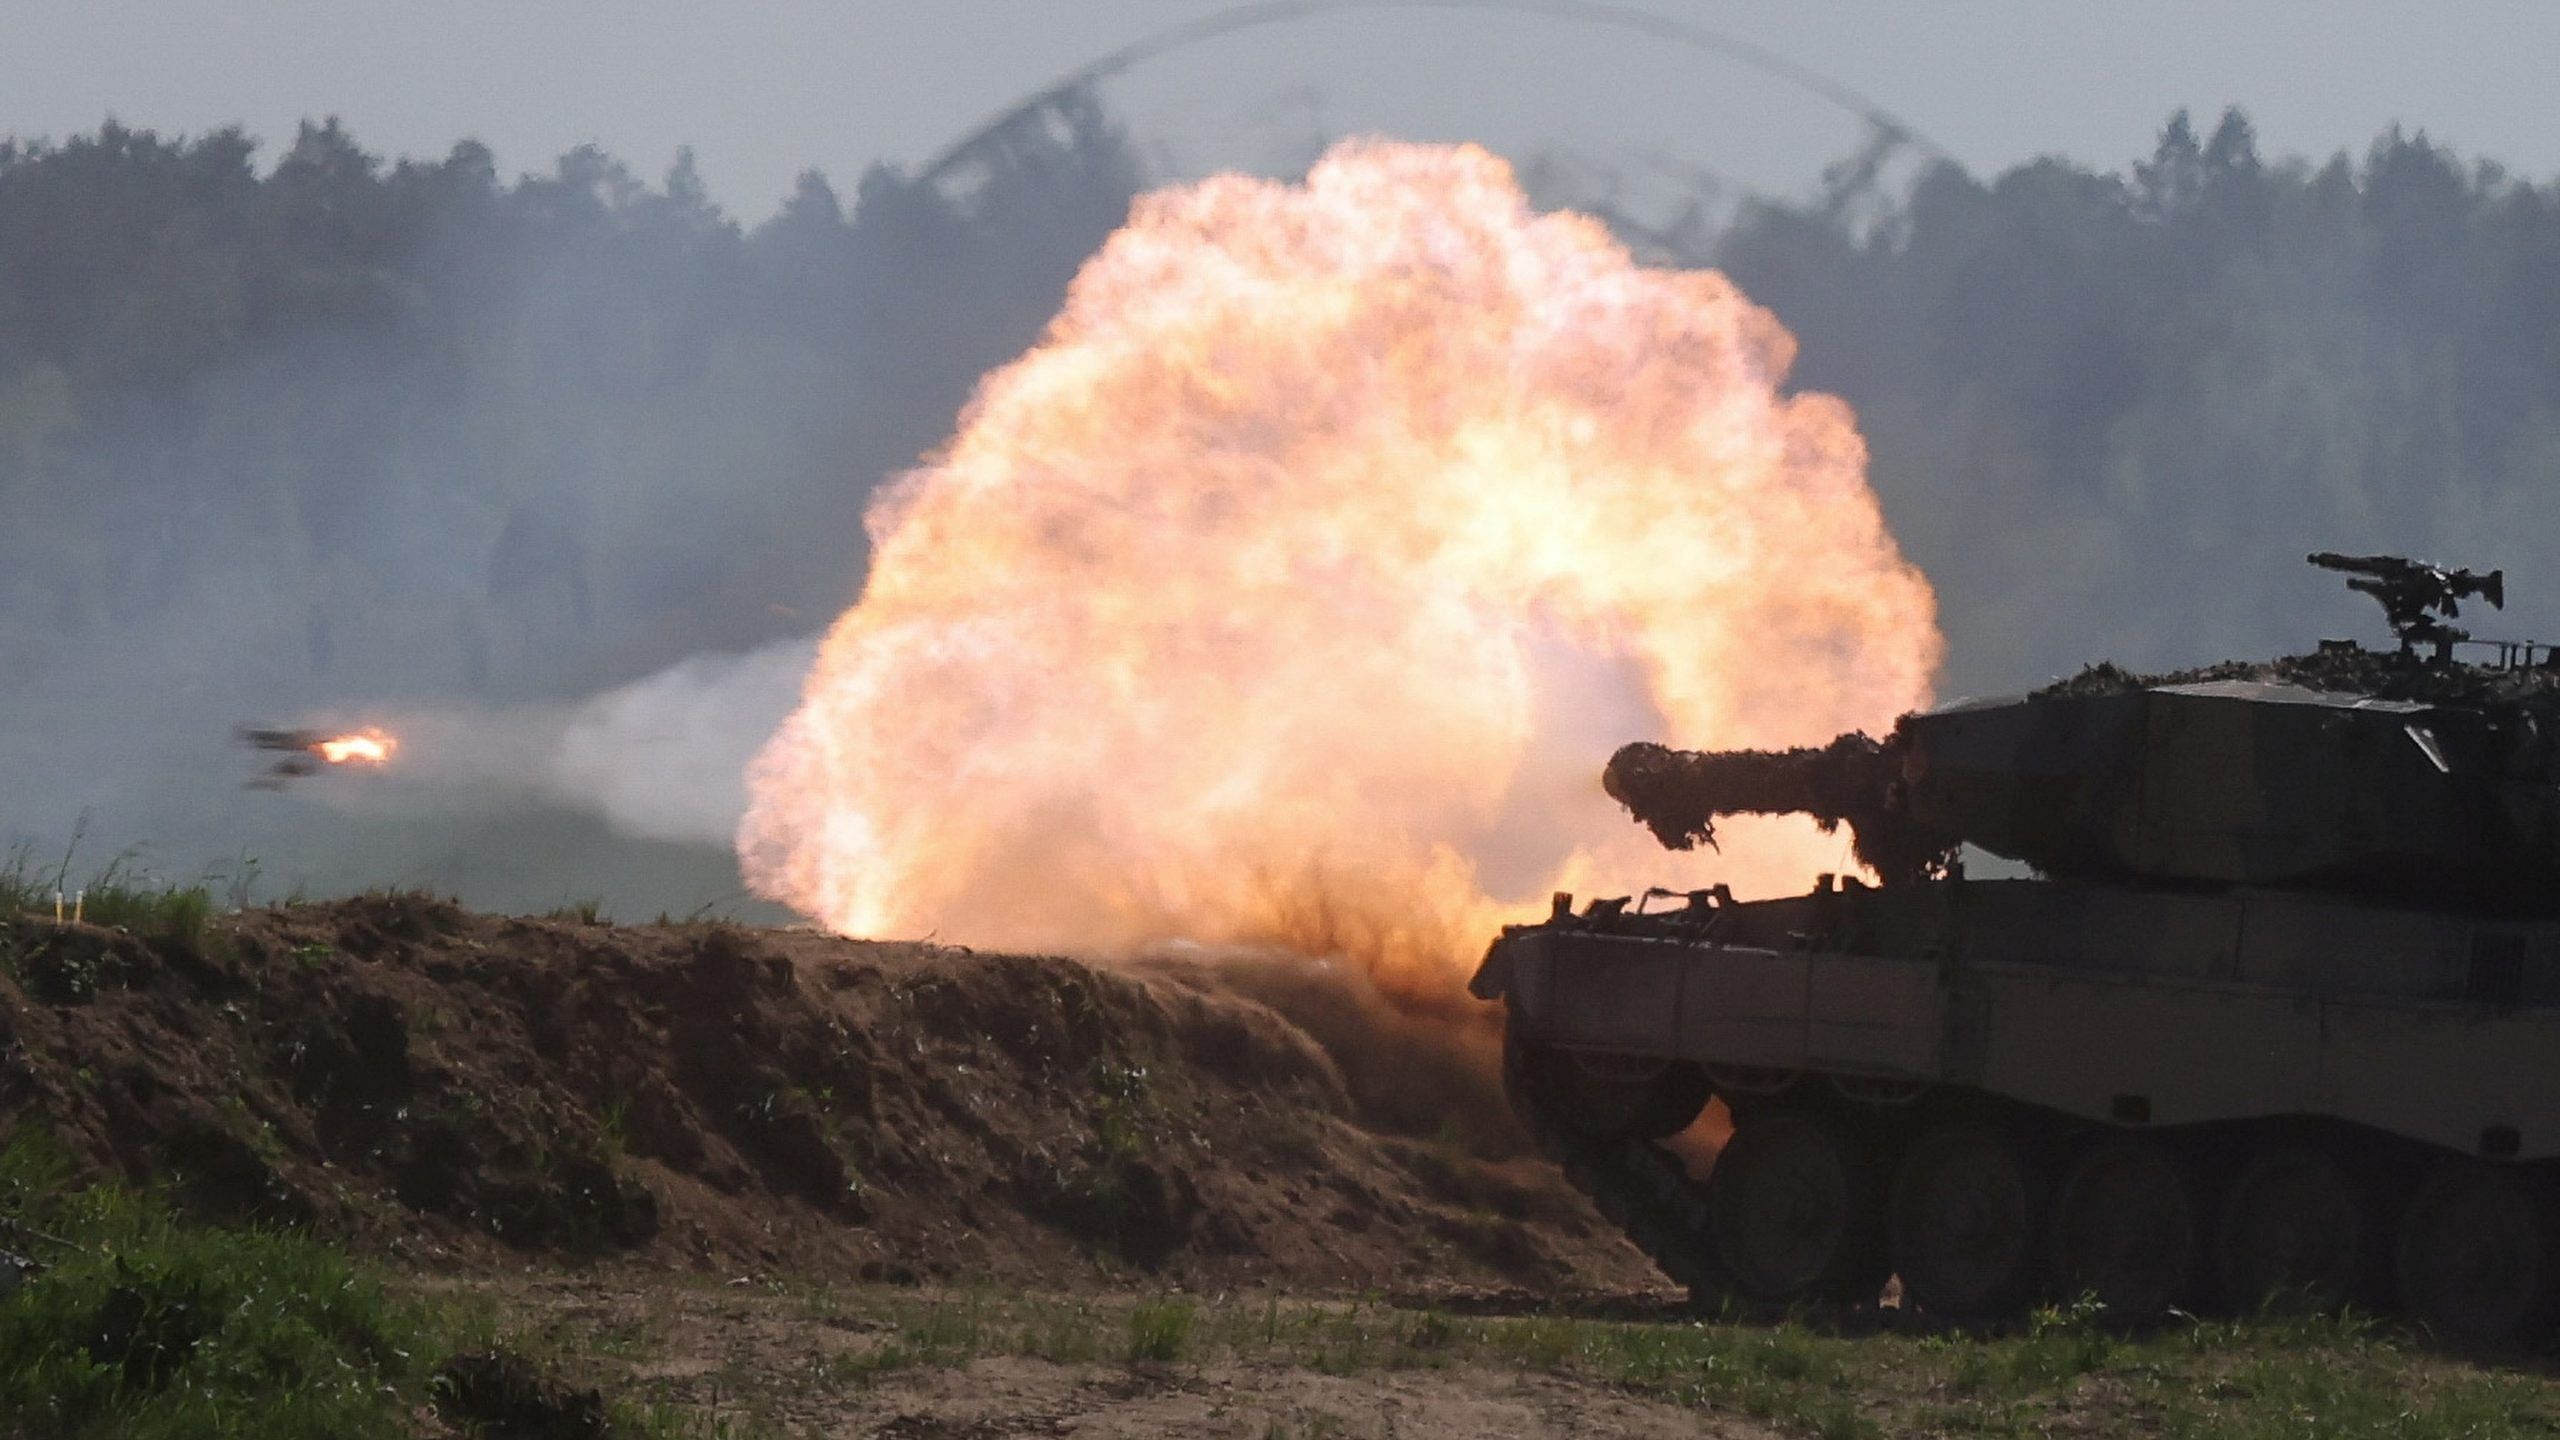 Niemcy nie zapobiegną wysłaniu 2 czołgów Panther na Ukrainę, mówi minister spraw zagranicznych